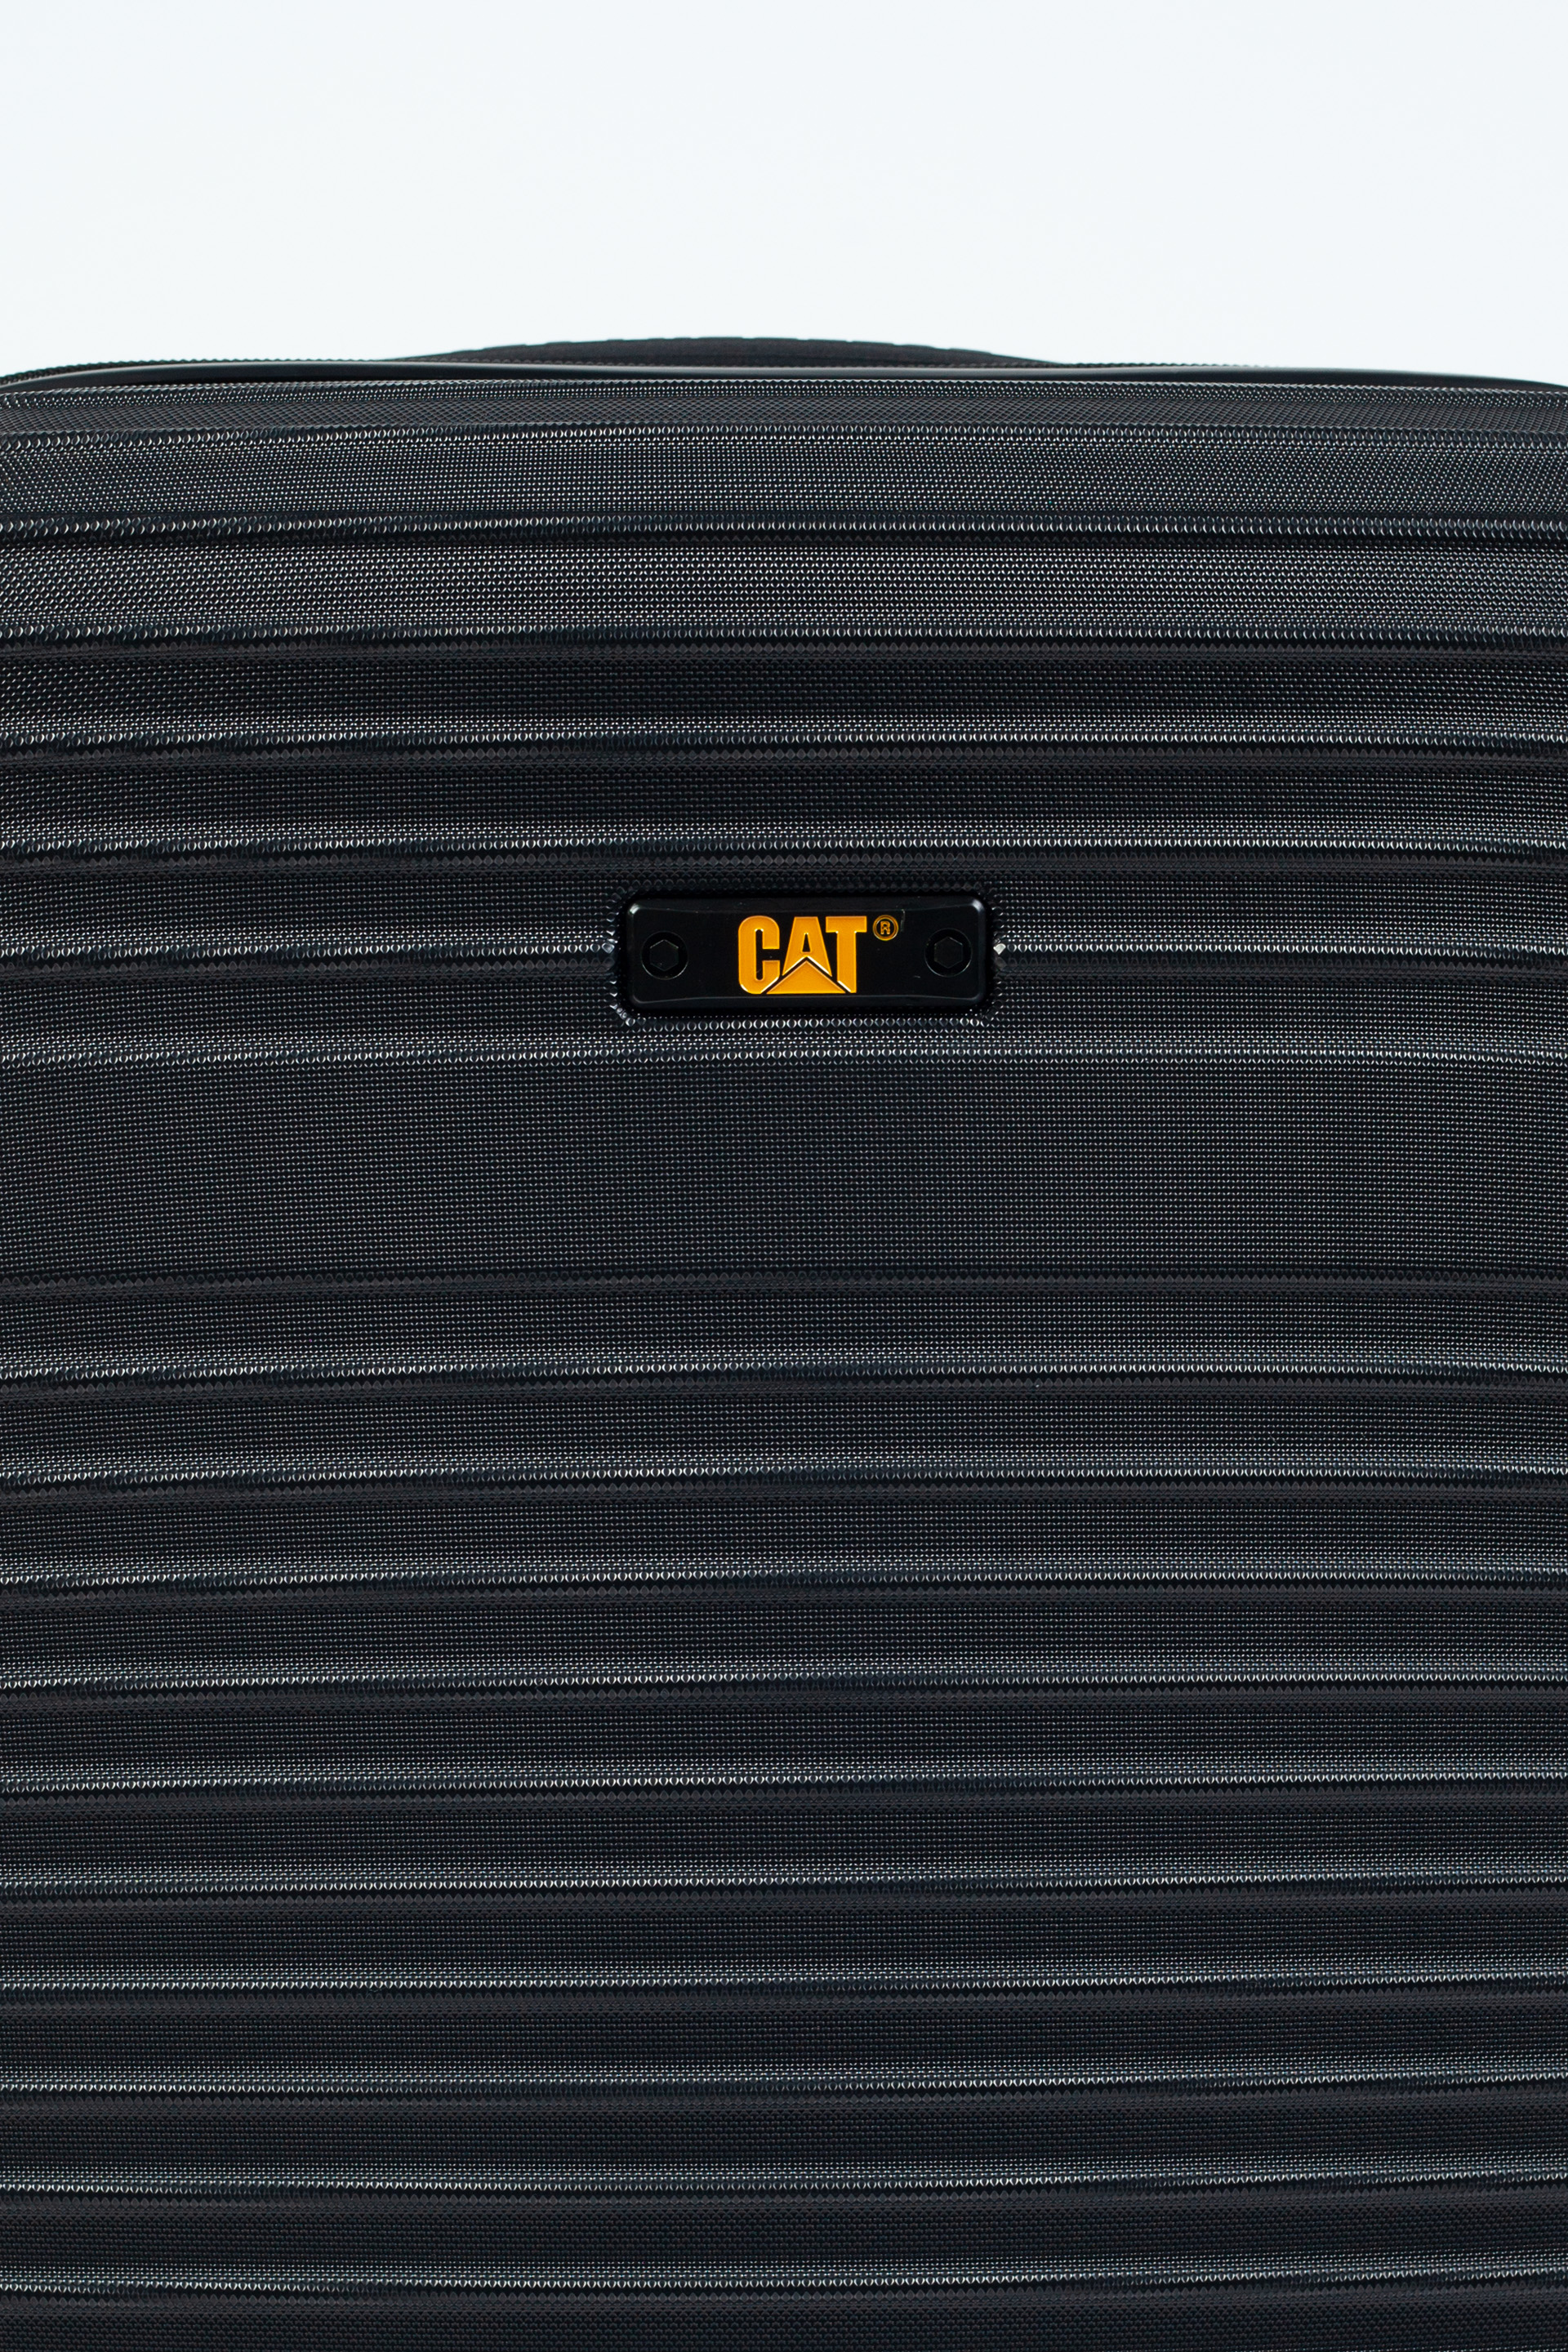 Kelioniniai lagaminai CAT 84409-01